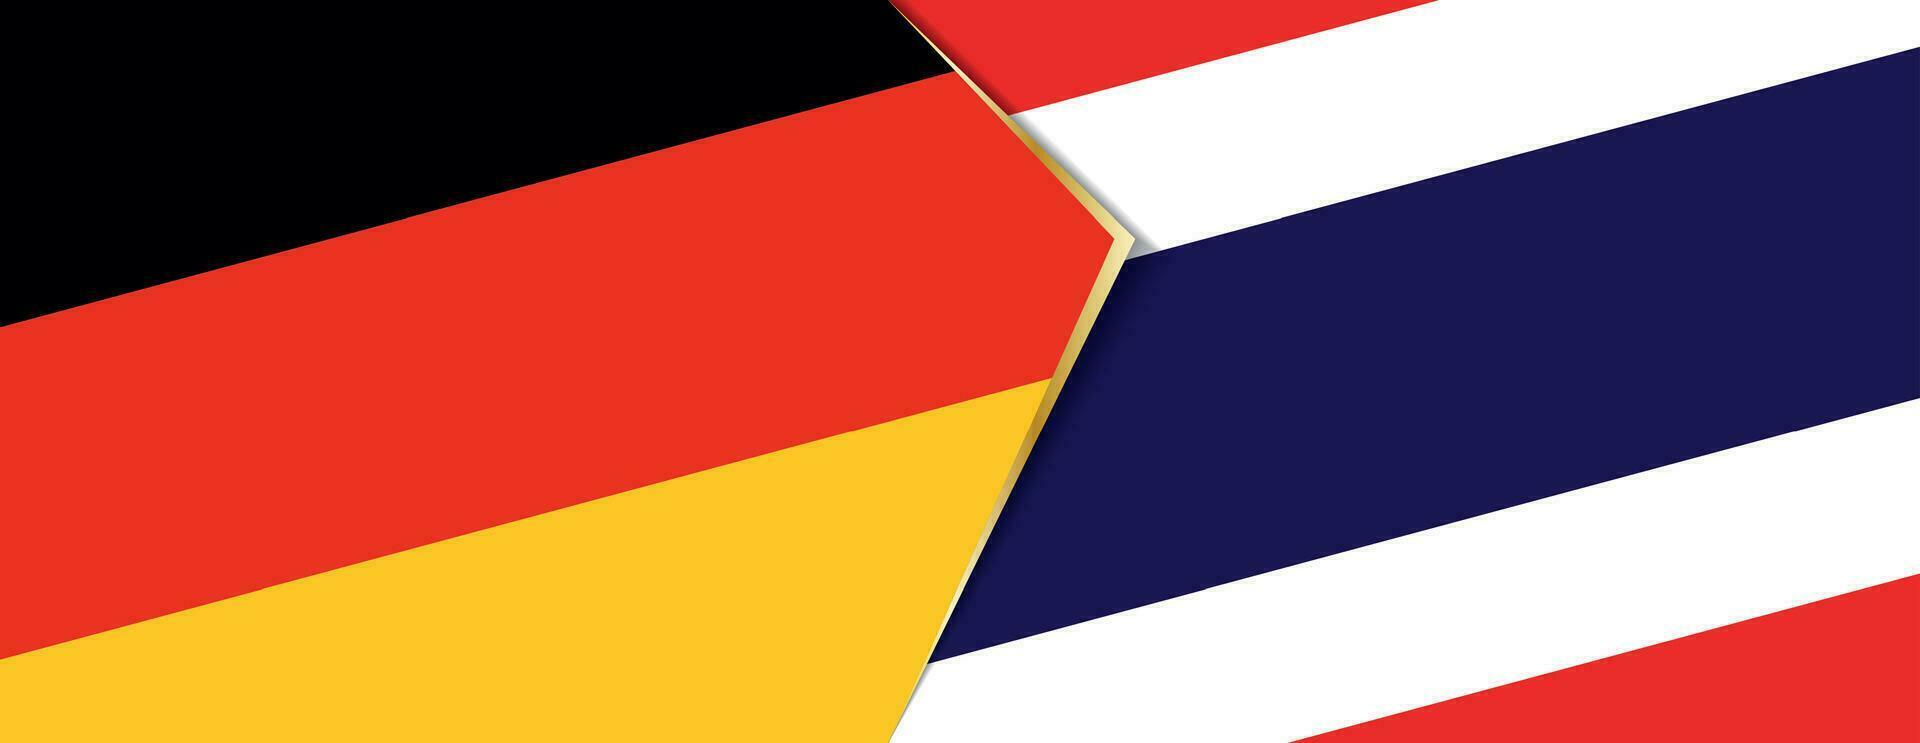 Alemania y Tailandia banderas, dos vector banderas